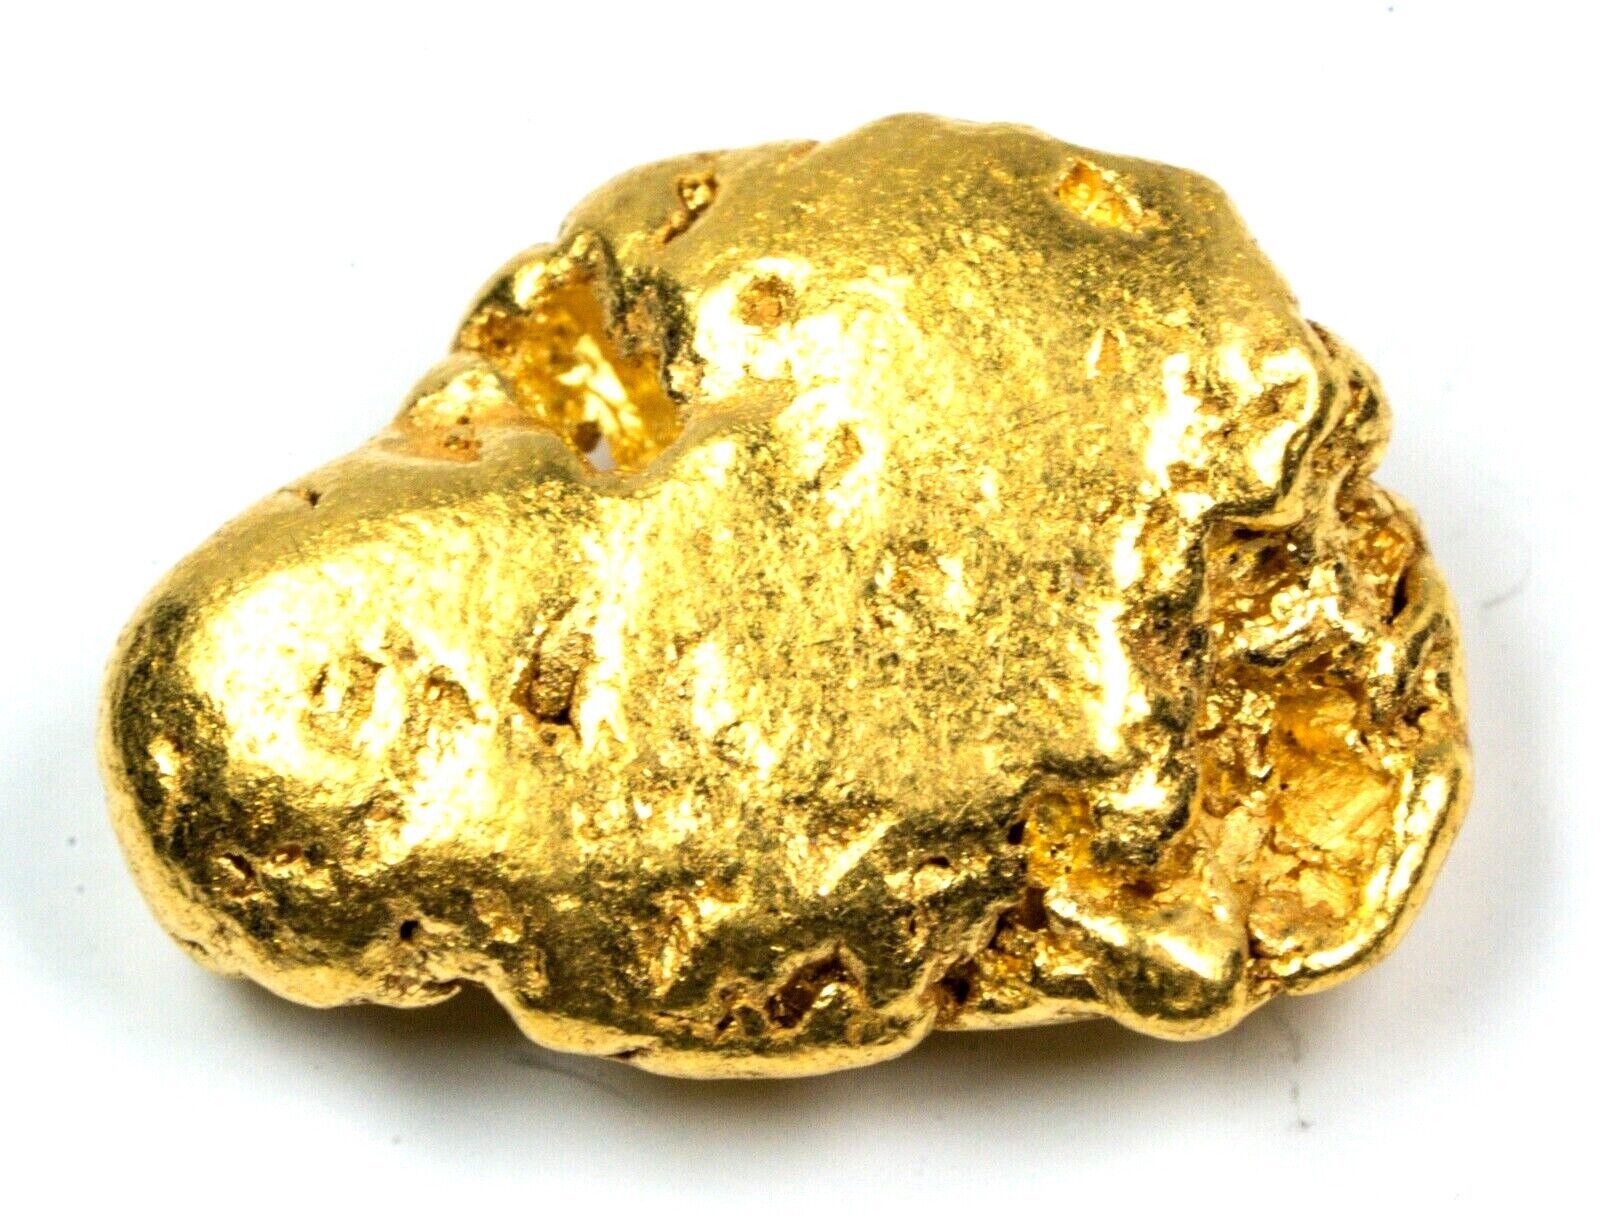 3.881 GRAMS ALASKAN NATURAL PURE GOLD NUGGET GENUINE (#N45)